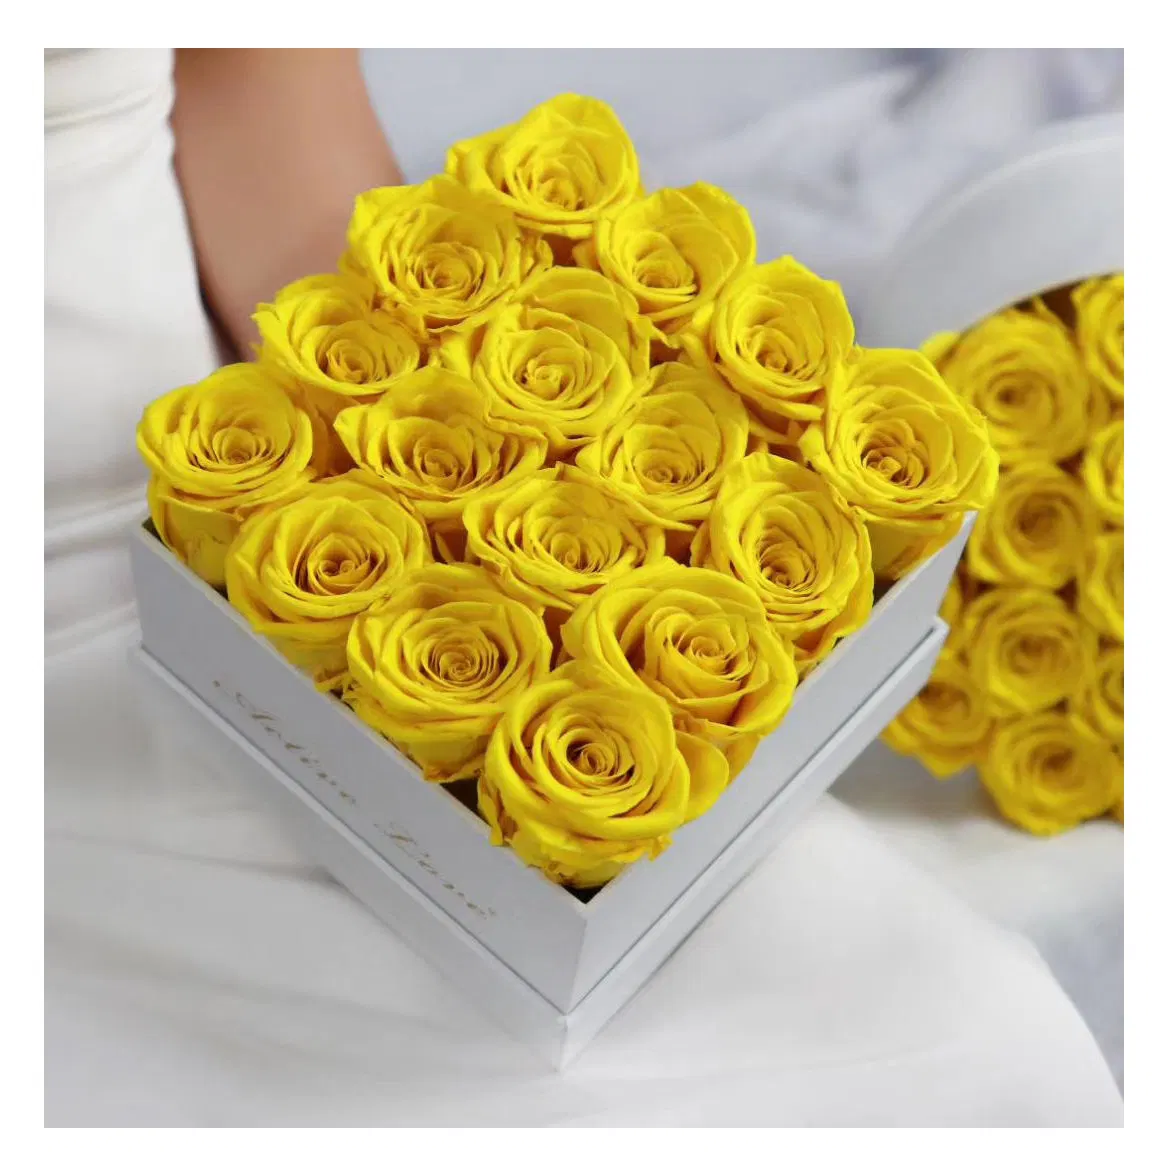 هدية عيد الحب الورود المحفوظة زهرة وردة زهرة اليفر الصناعية أزهار في صندوق لزينة عيد الحب